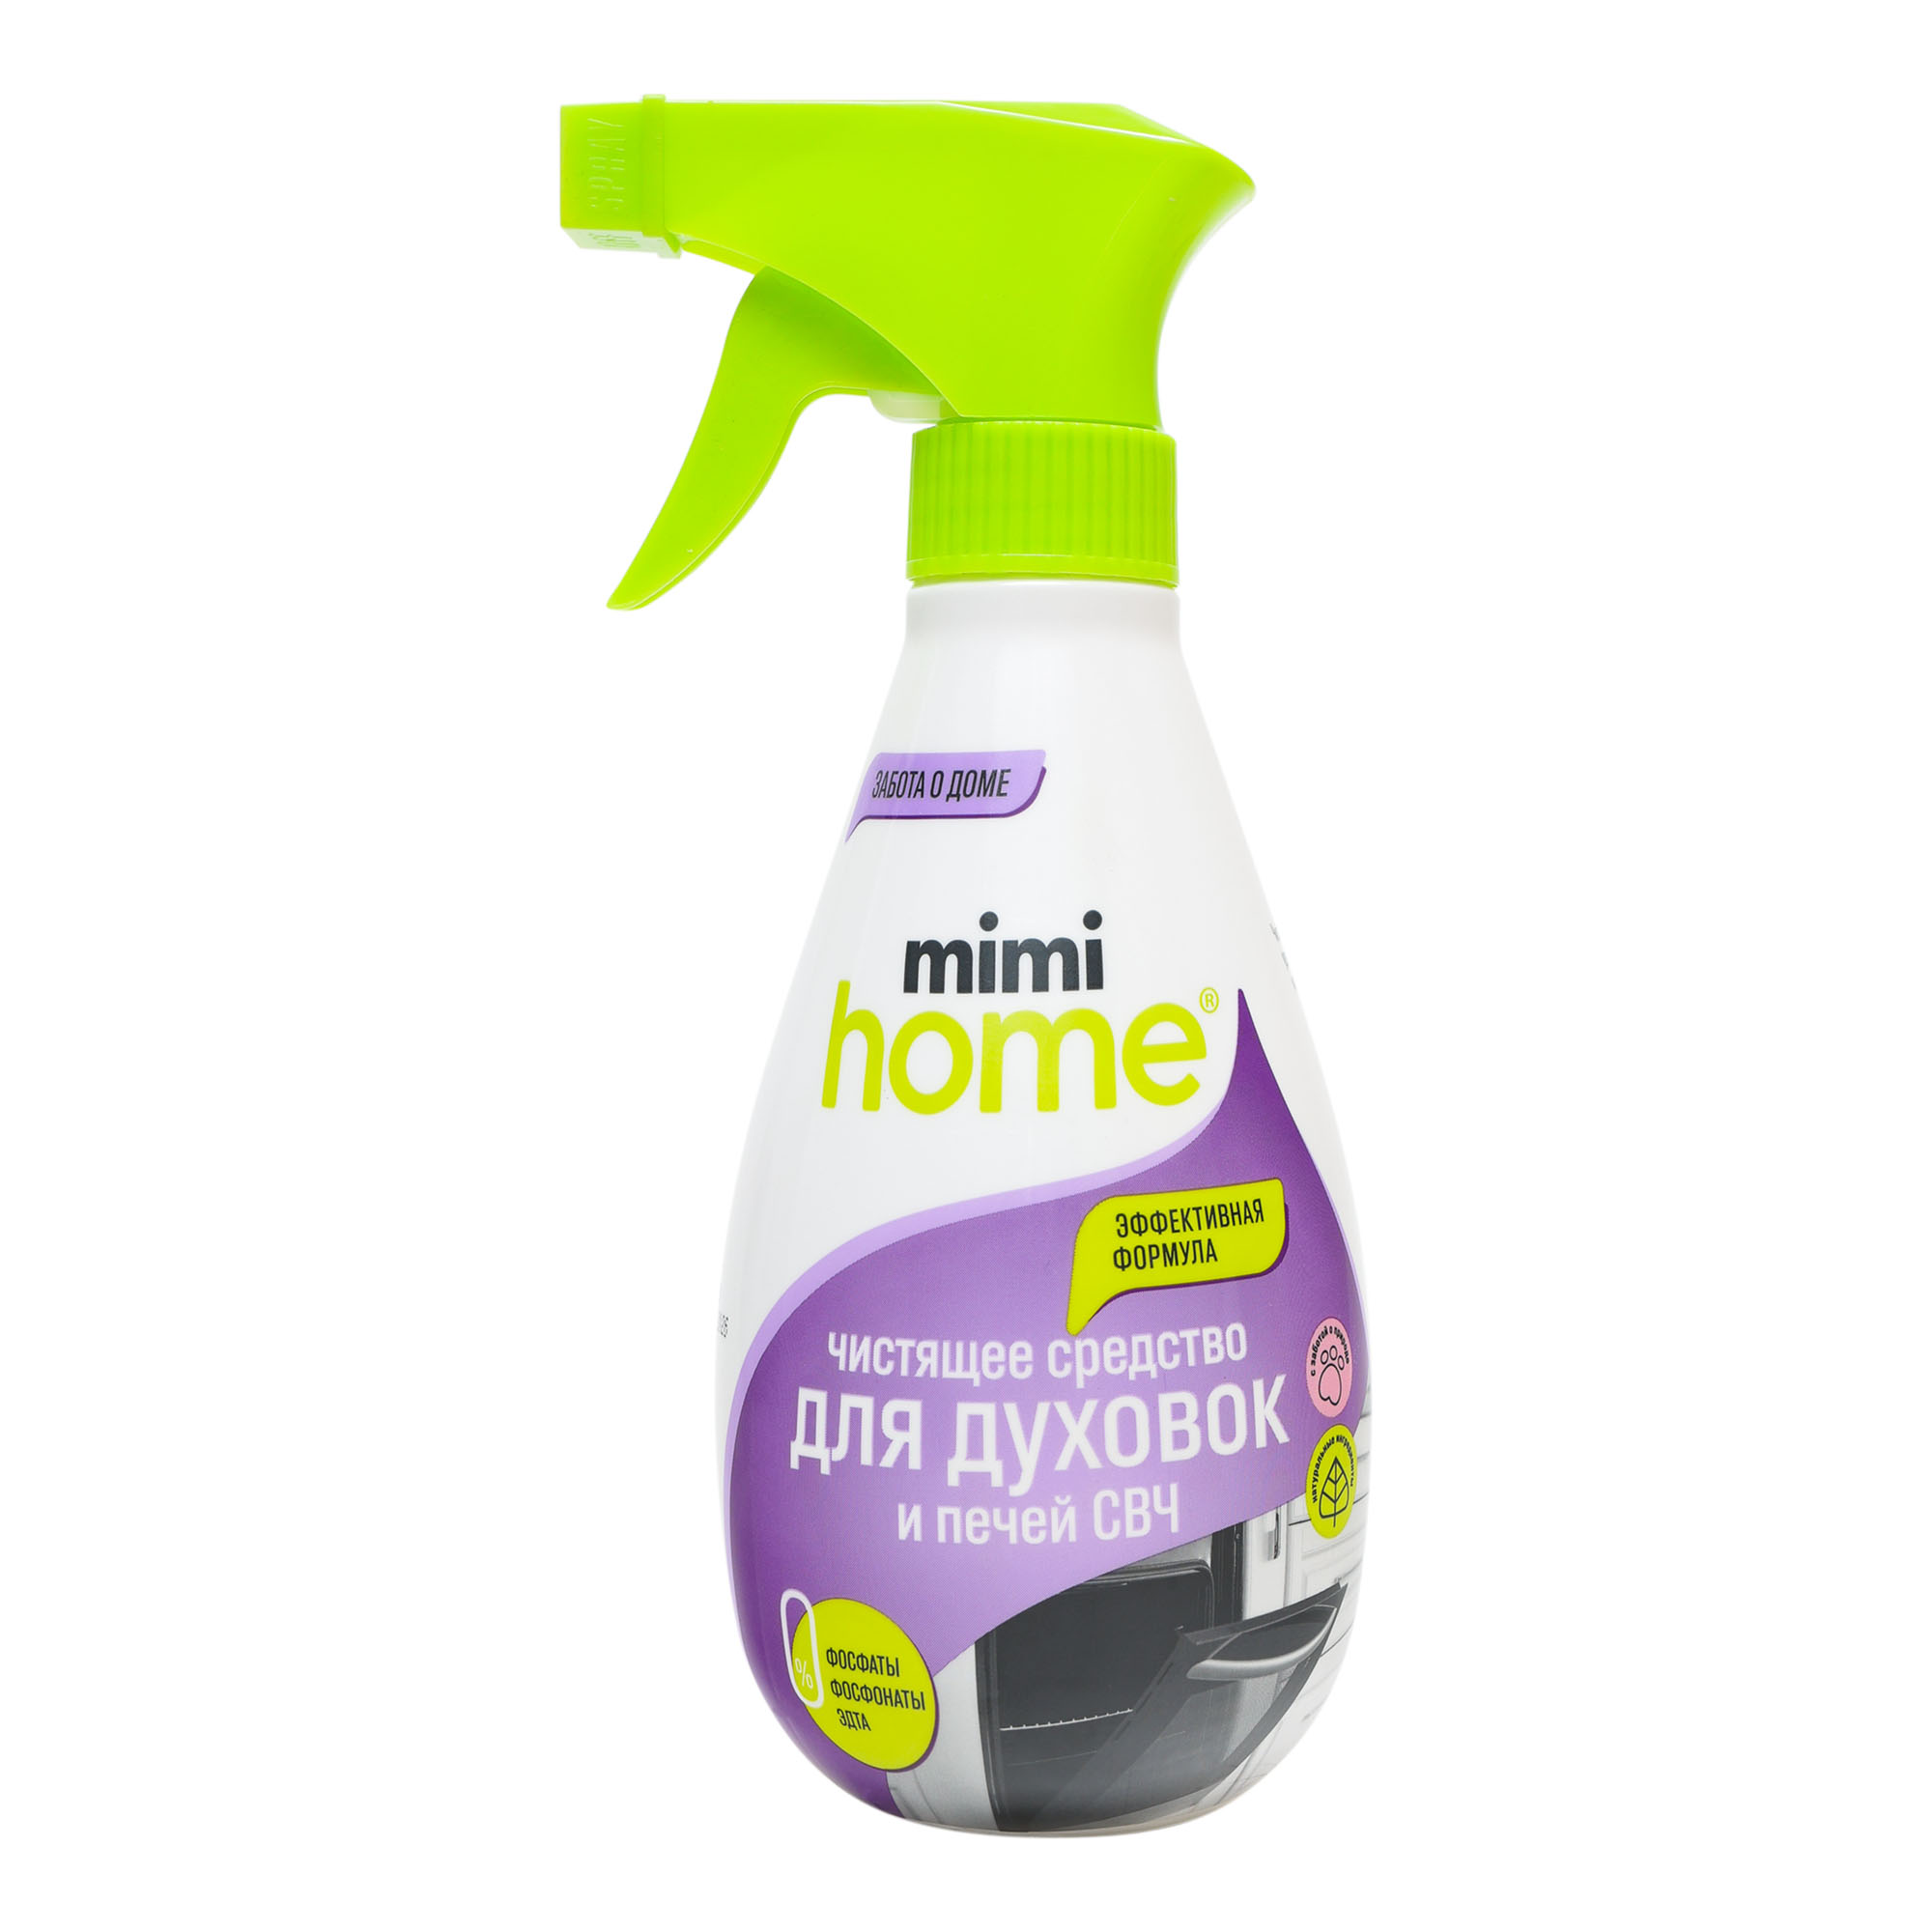 Средство чистящее Mimi Home для духовок и свч 370 мл чистящее средство mimi home для всех видов поверхностей 100 мл